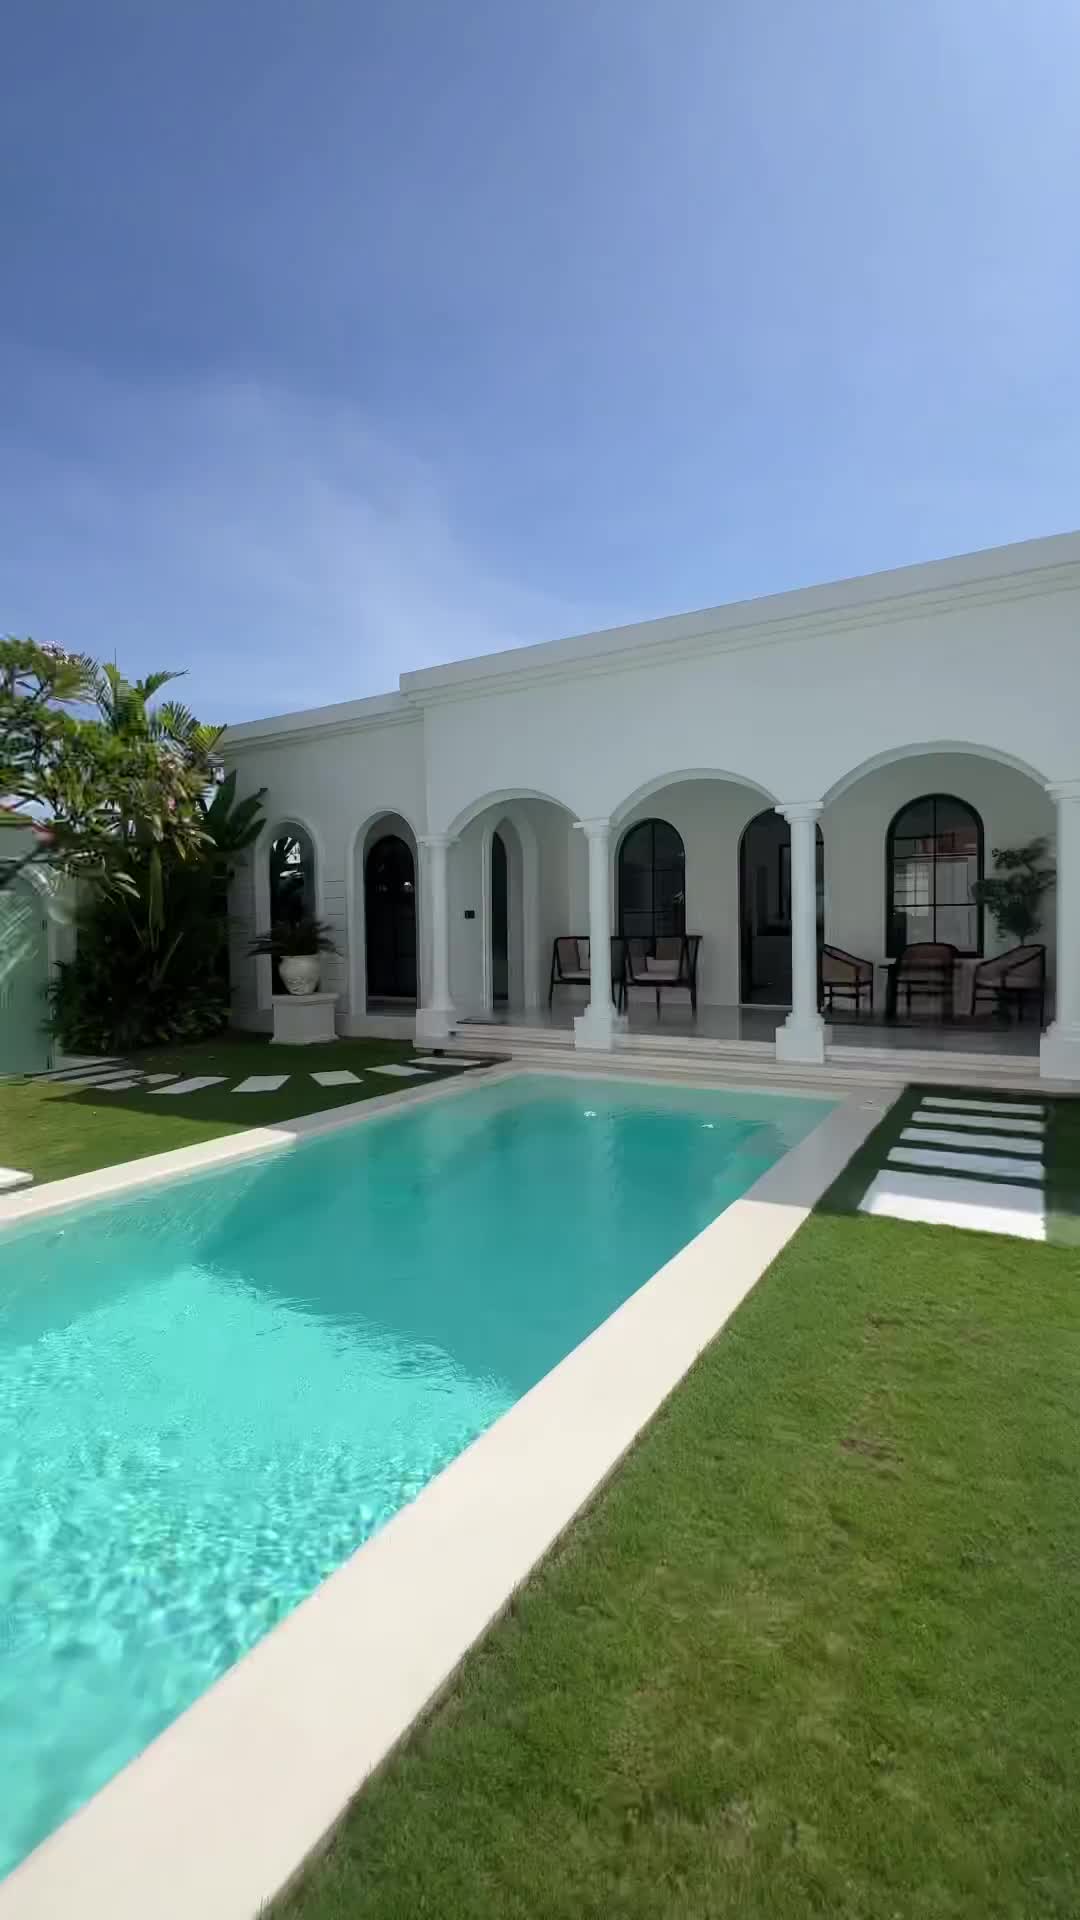 Tropical Luxury Villa Tour: Timeless Black & White Design